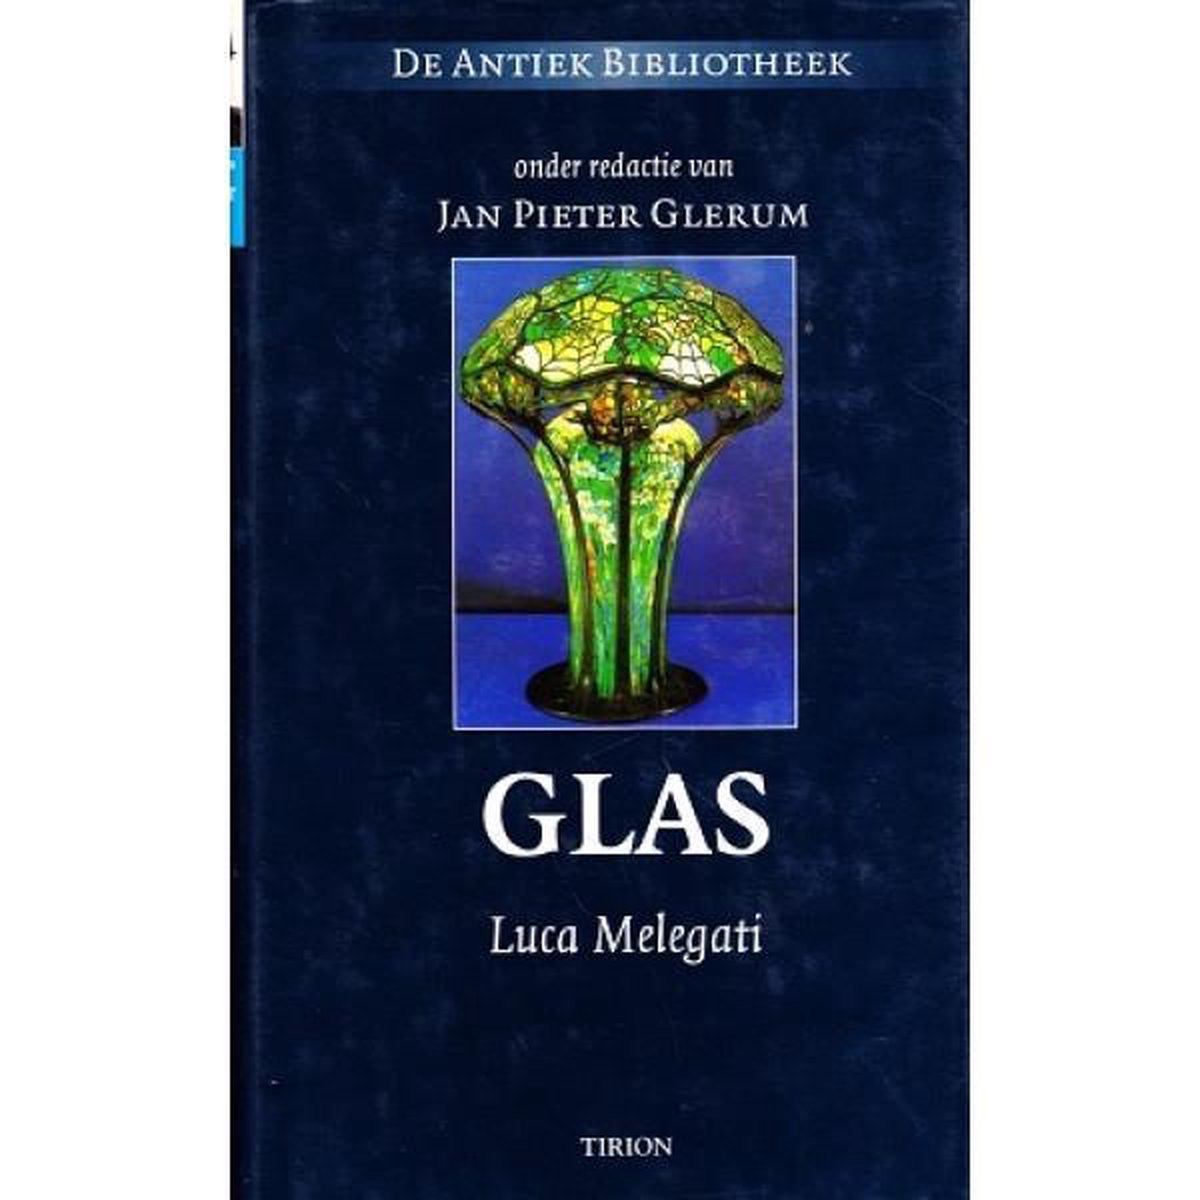 Glas / De antiek bibliotheek